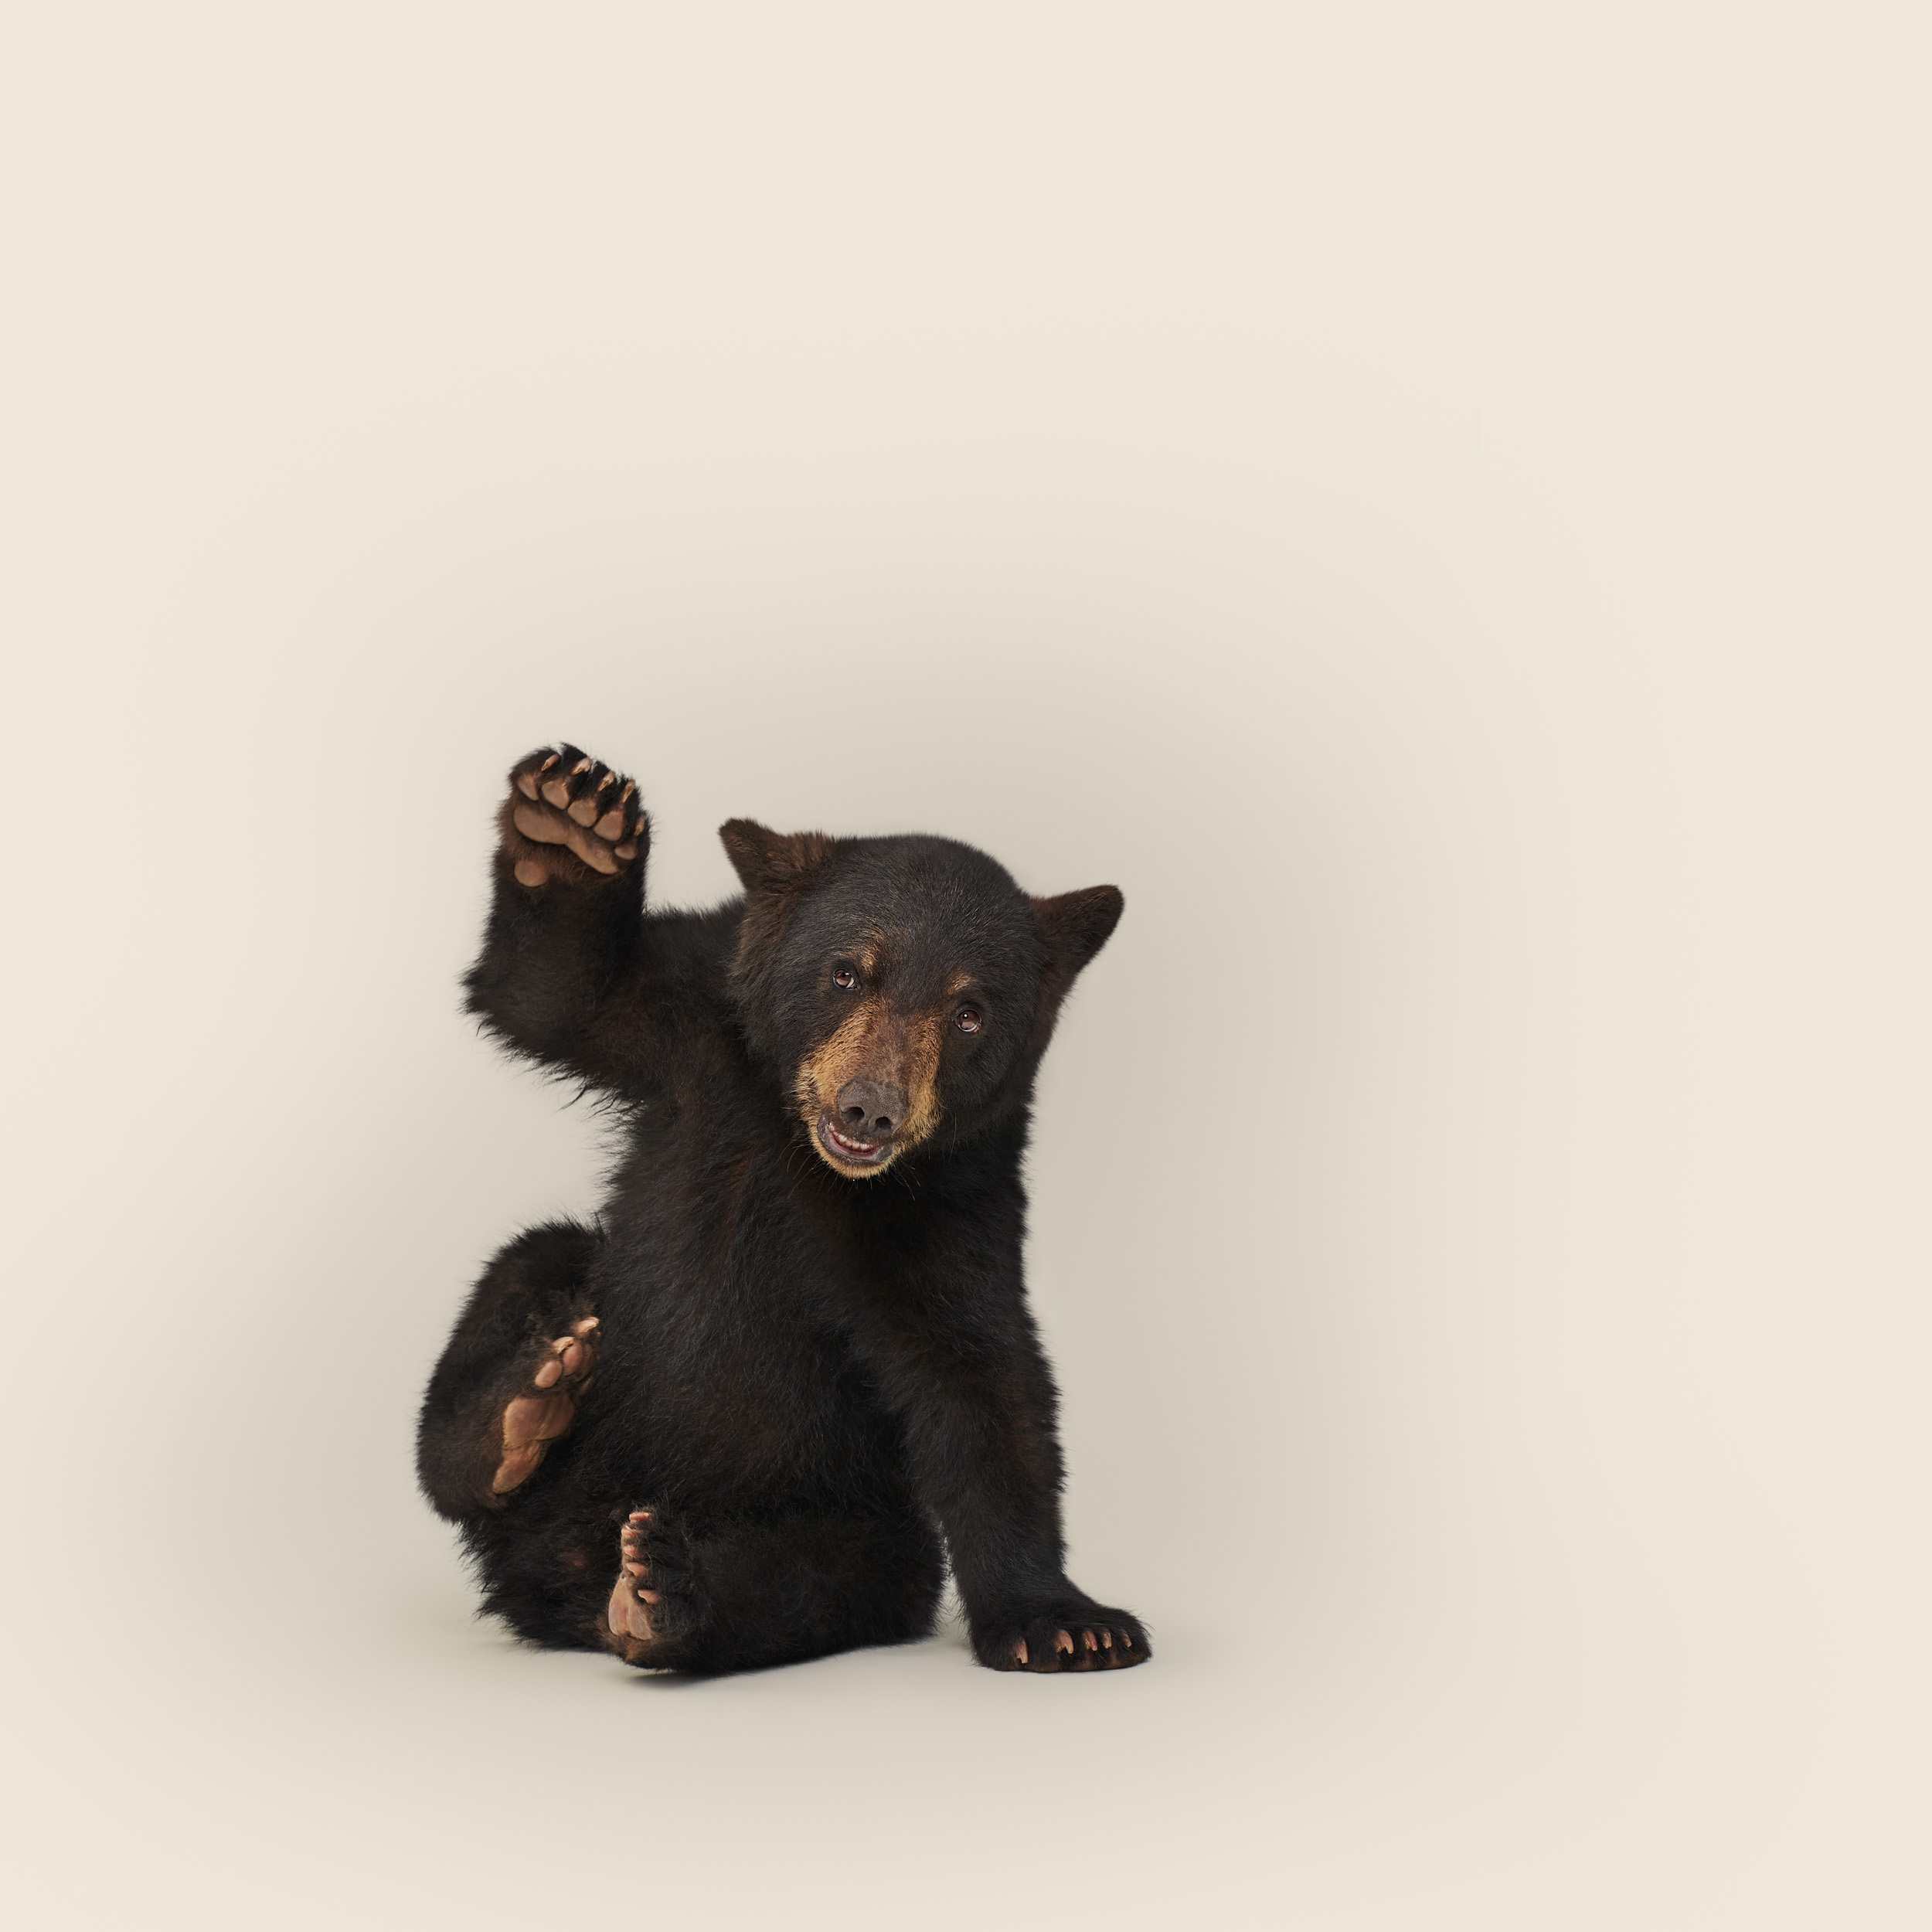 Ursus americanus juvenile No 1 (black bear)